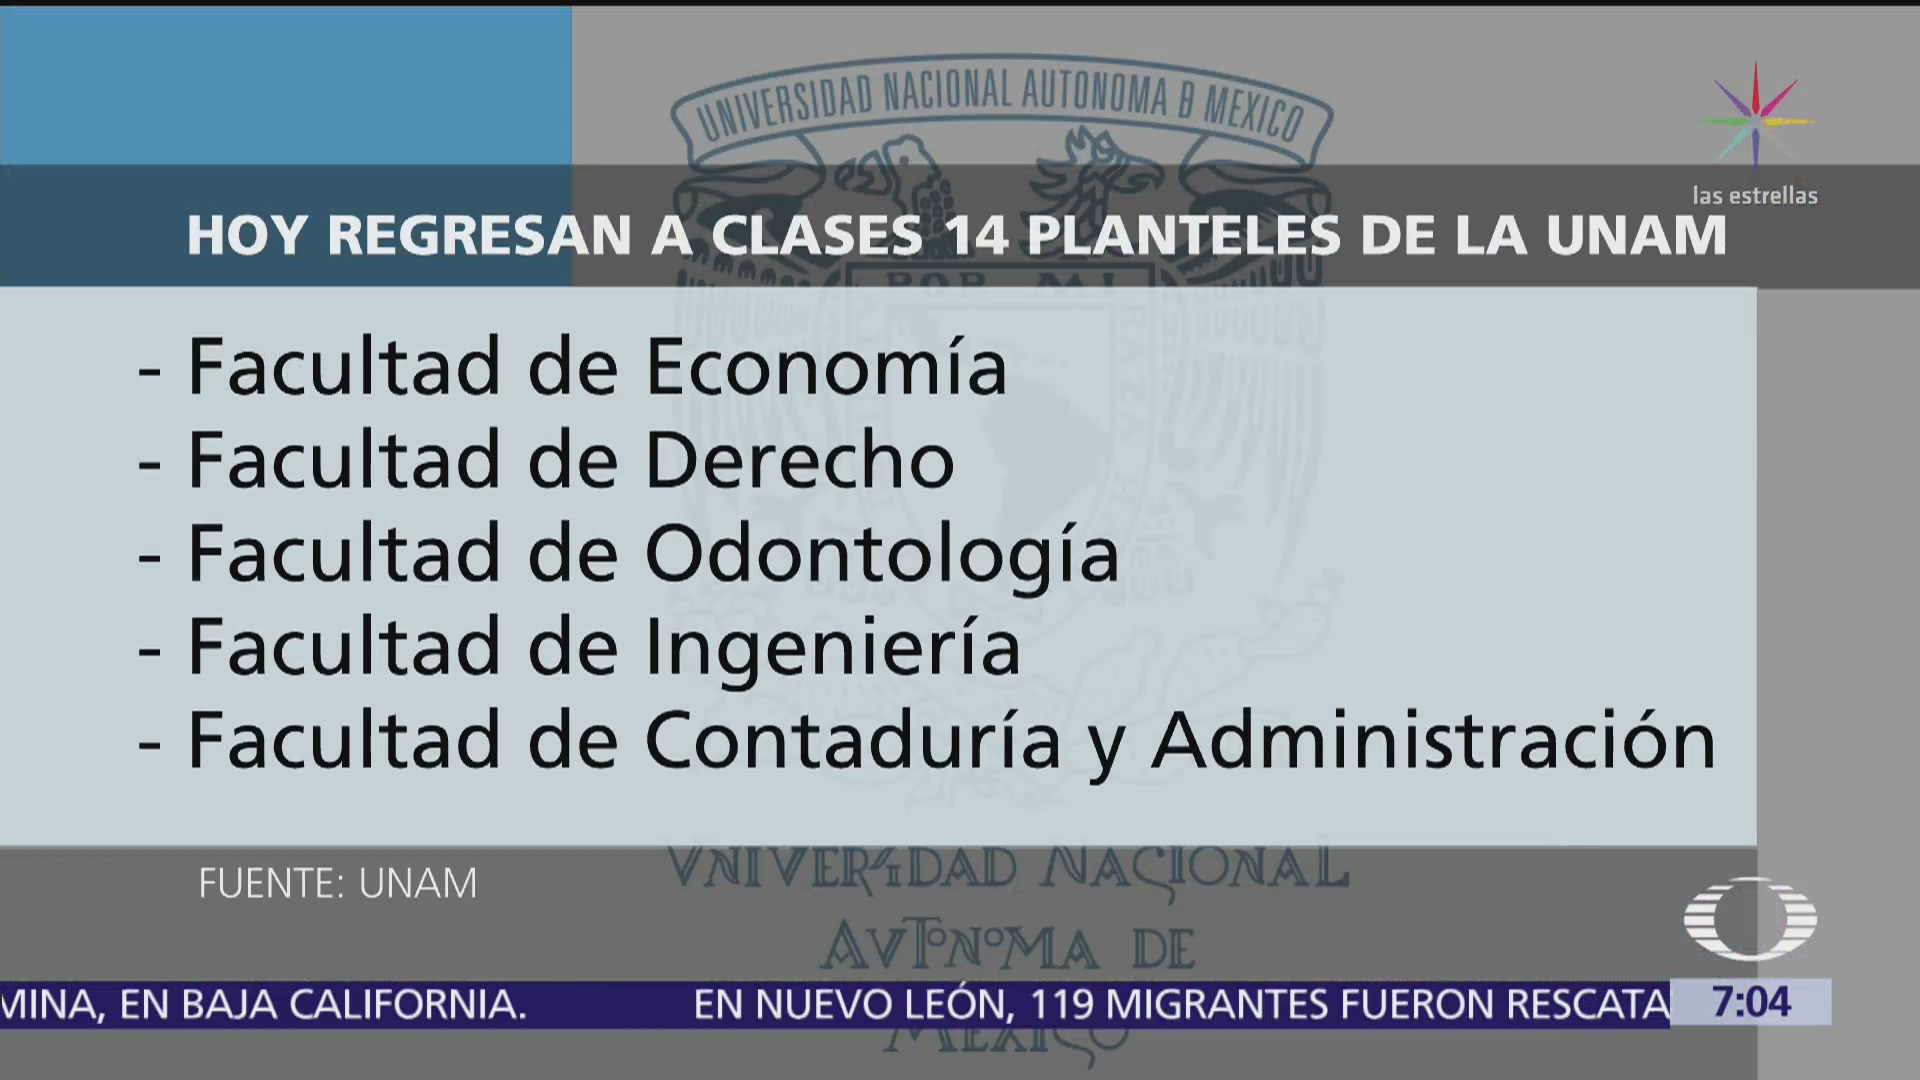 UNAM: Regresan a clases 14 planteles